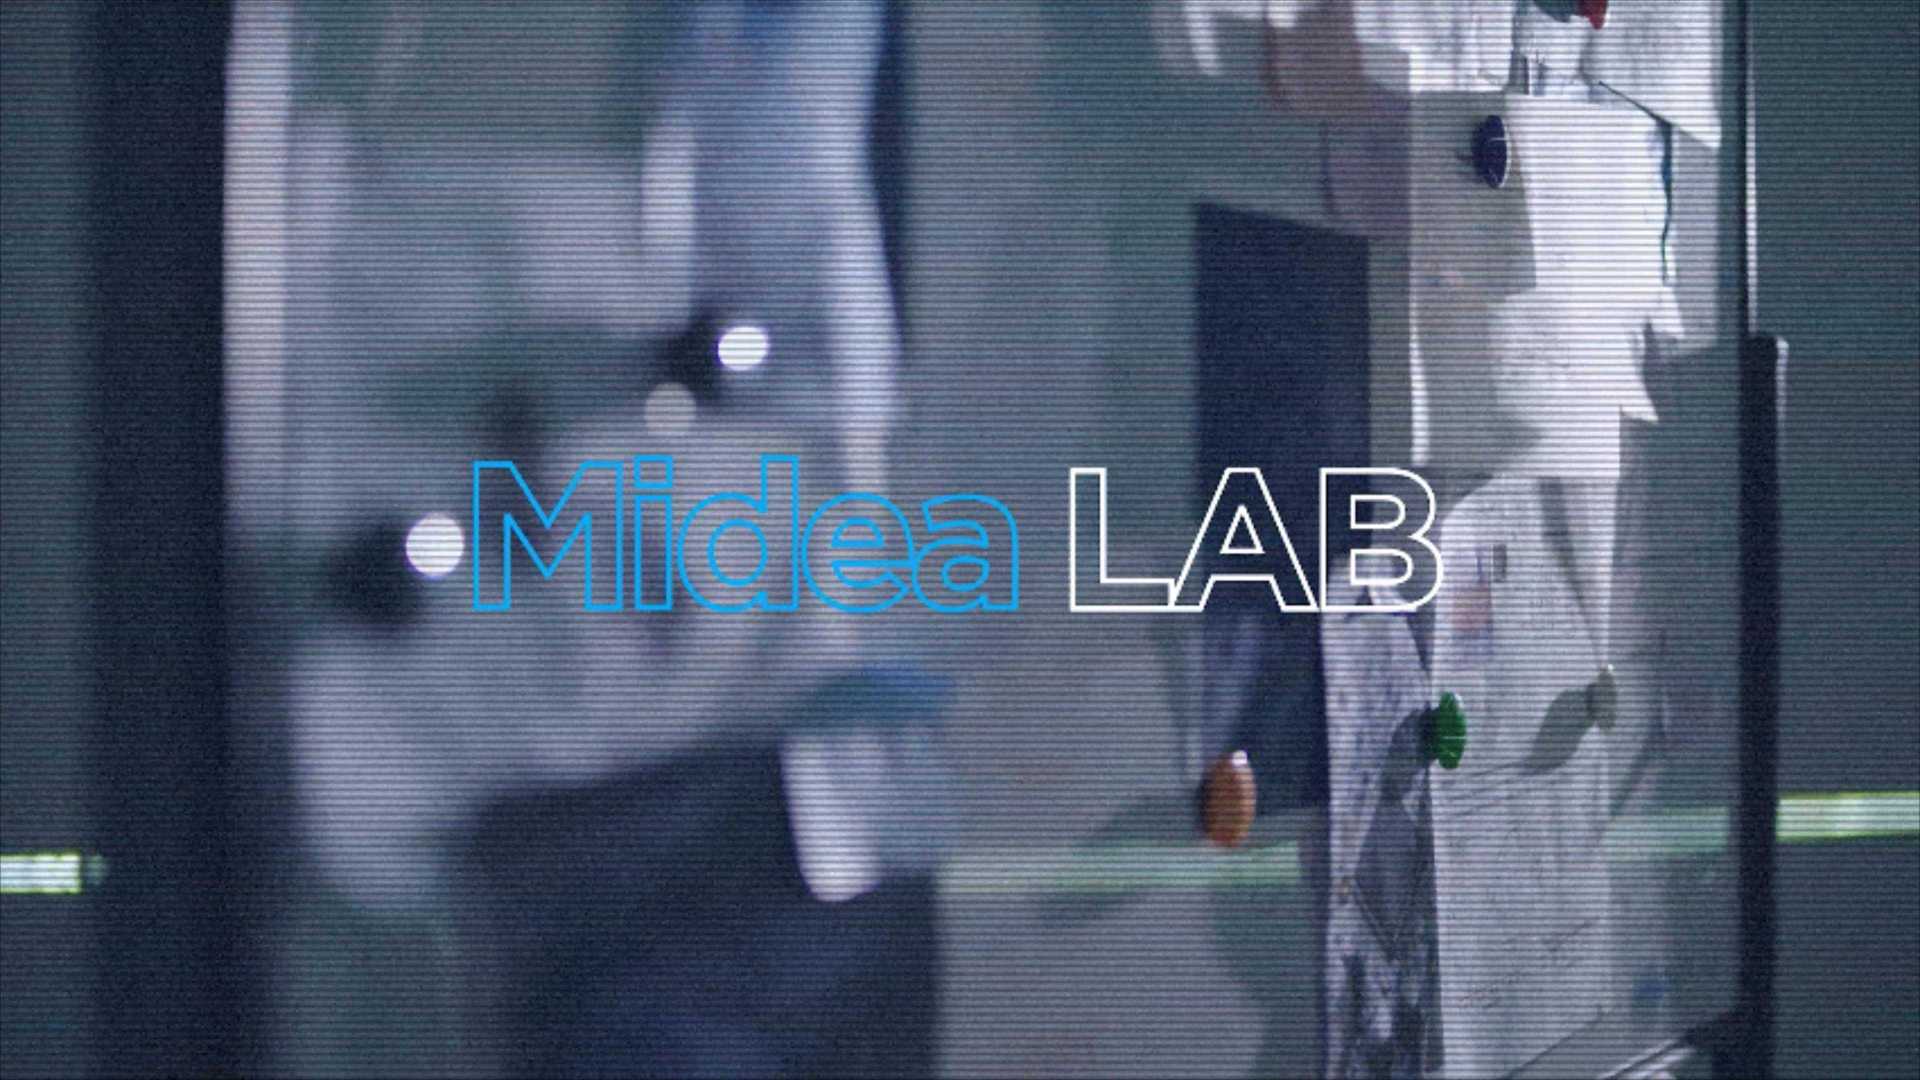 美的空调海个视频-Midea Lab 低电压实验